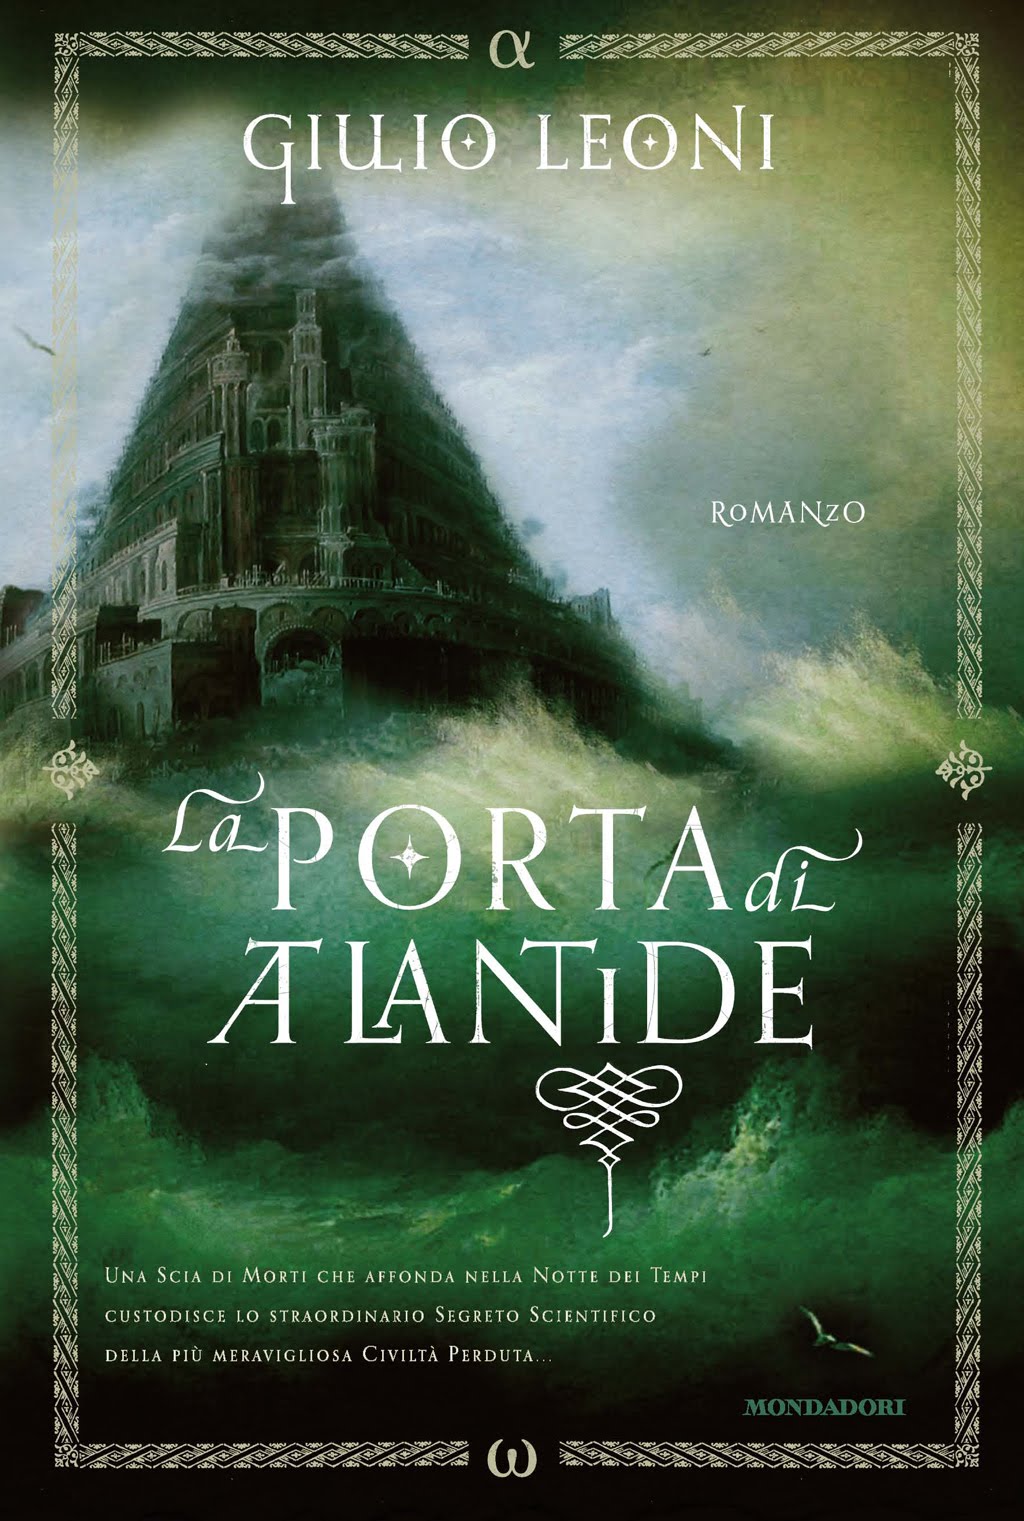 La porta di Atlantide (Italian language, 2011, Mondadori)